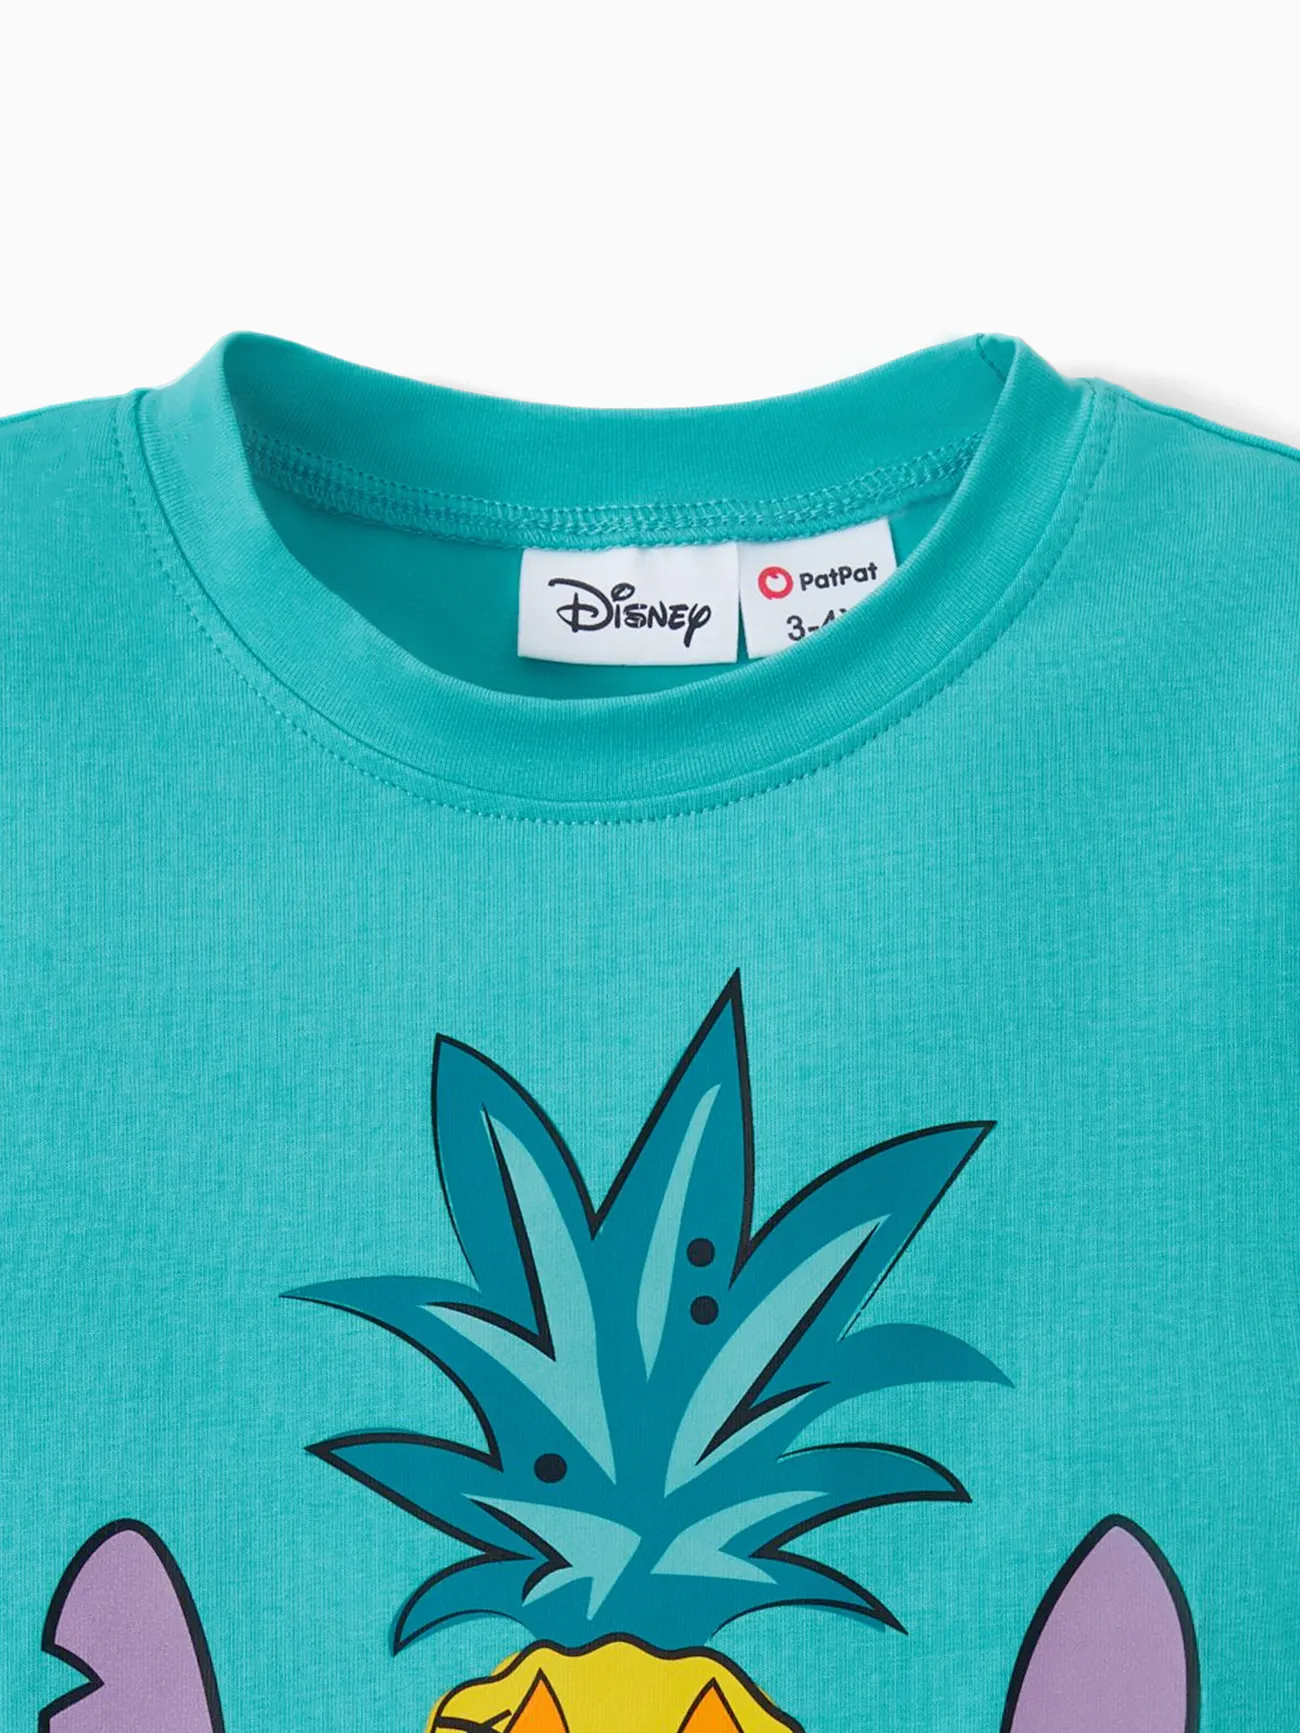 Disney Stich Familien-Looks Tropische Pflanzen und Blumen Tanktop Familien-Outfits Sets grün big image 1